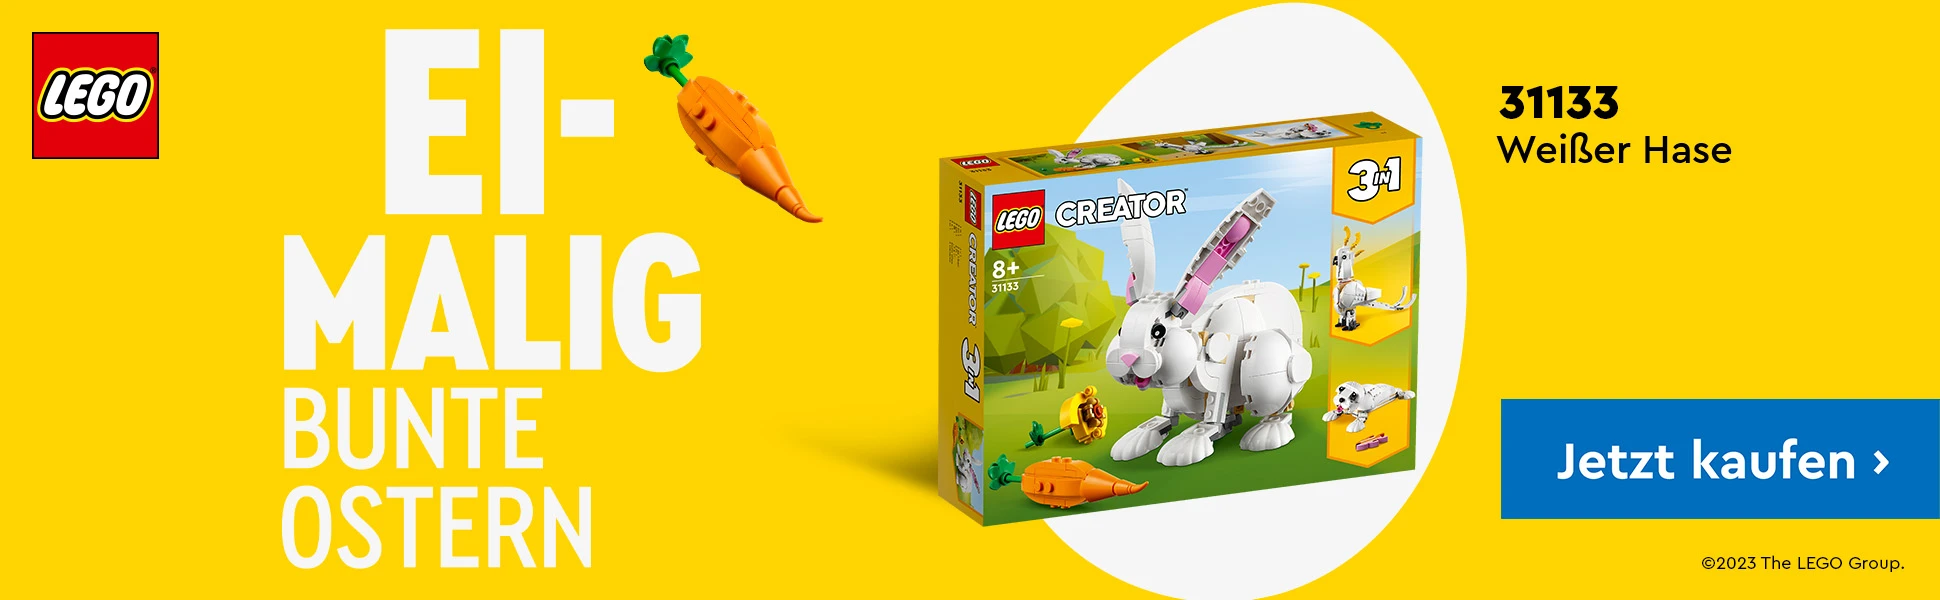 LEGO Sets zu Ostern bei Spielzeugwelten